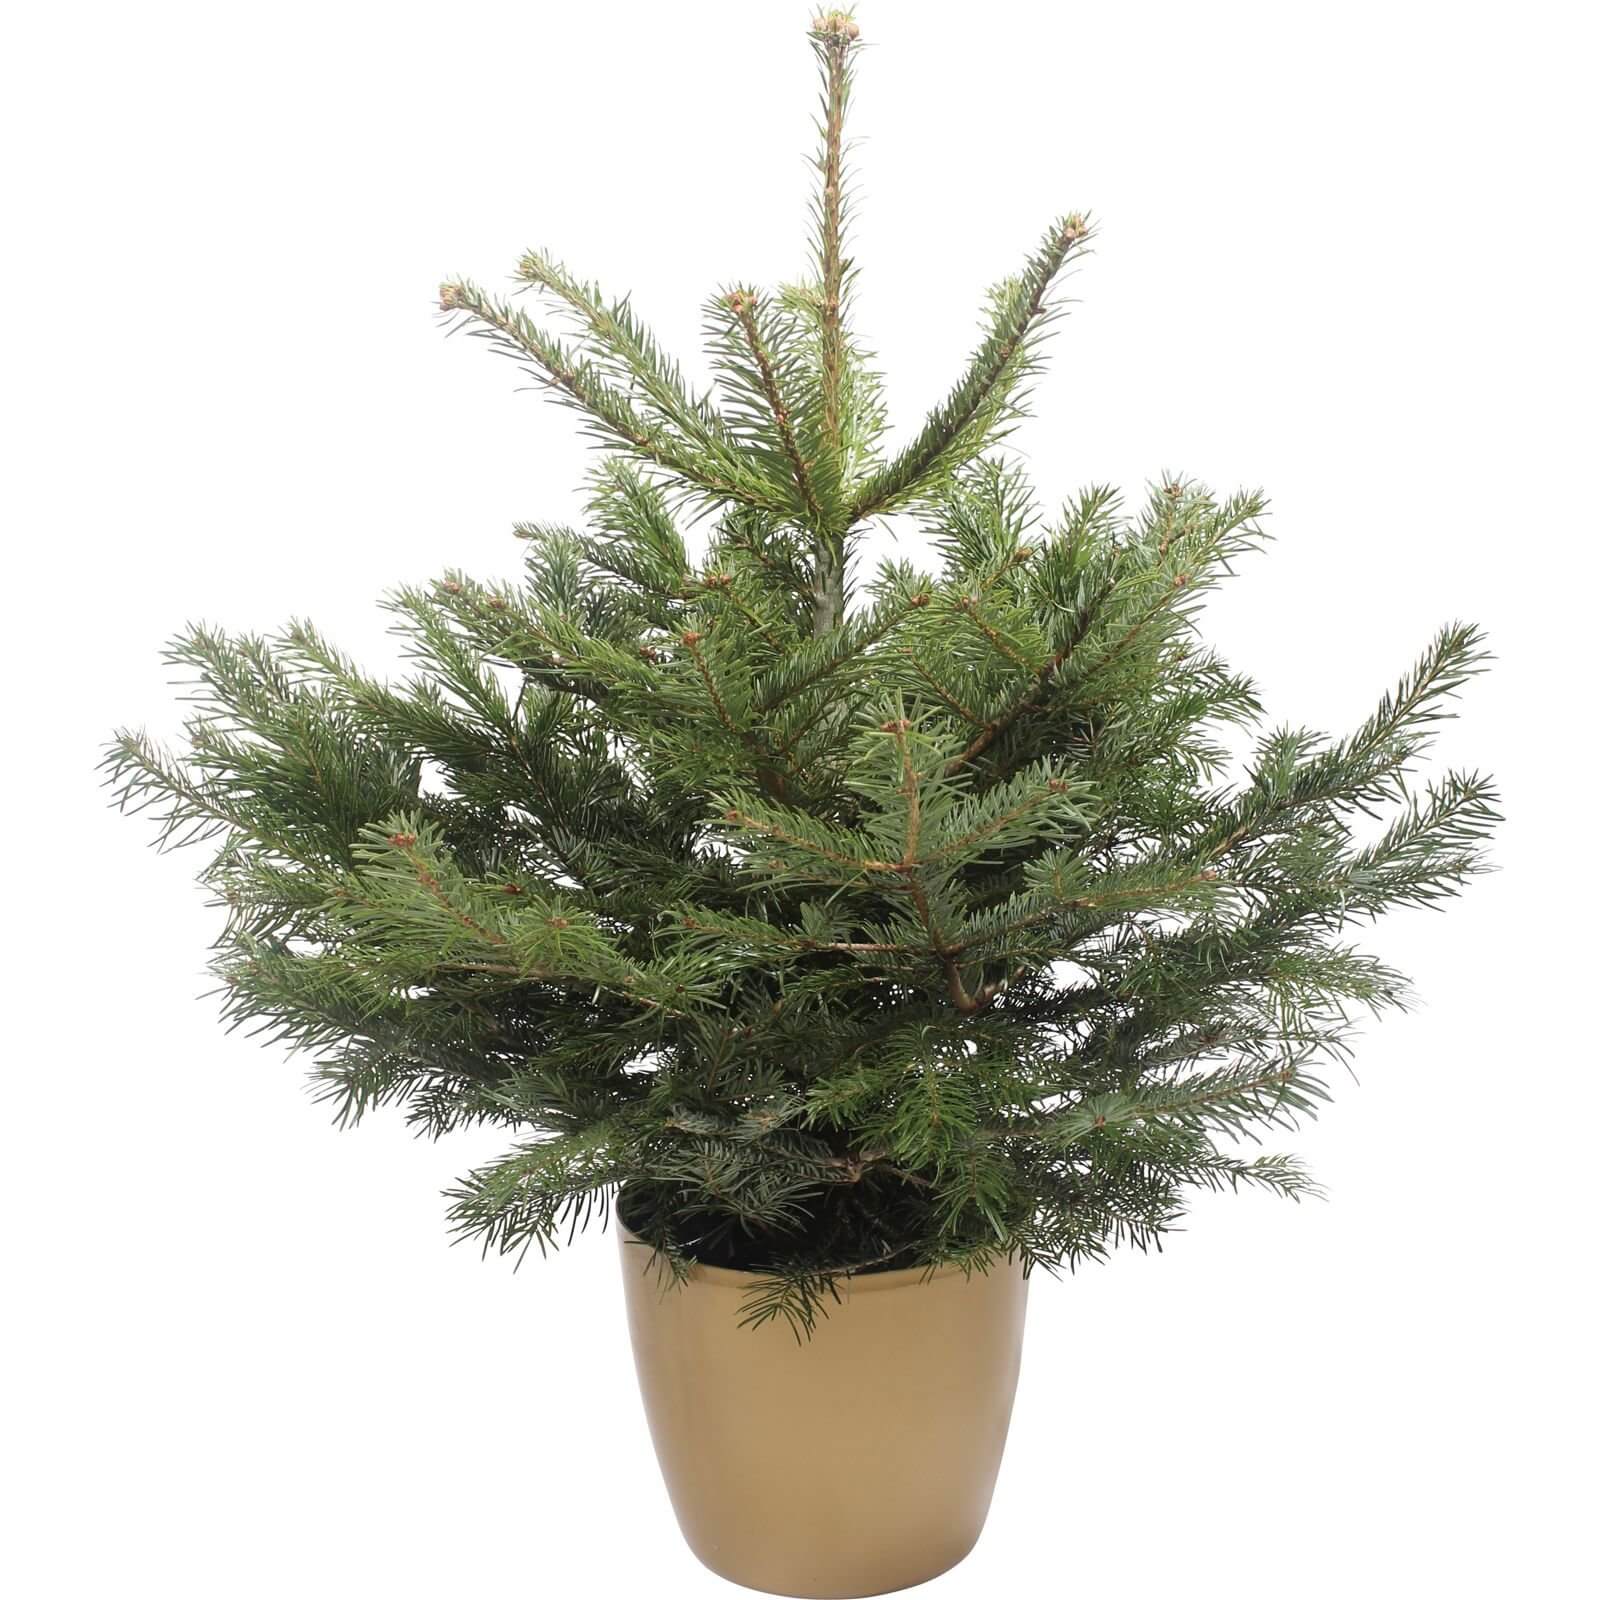 80-100cm (2.5-3ft) Living Pot Grown Nordman Fir Real Christmas Tree